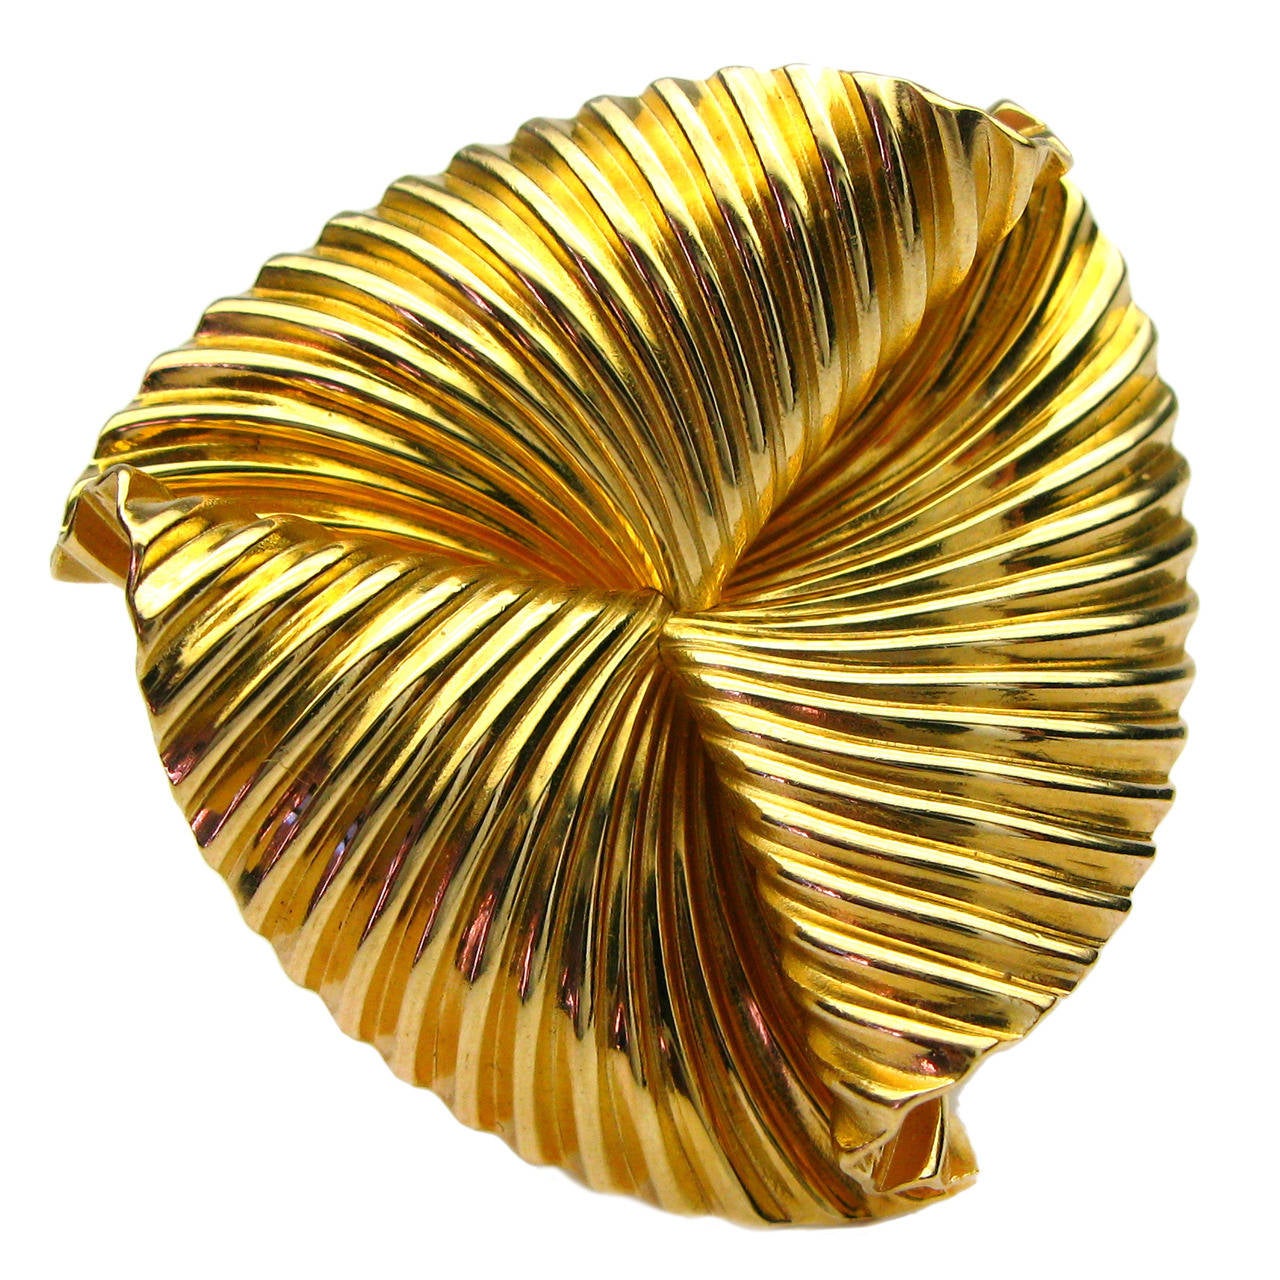 Tiffany & Co. Gold Fan Pin